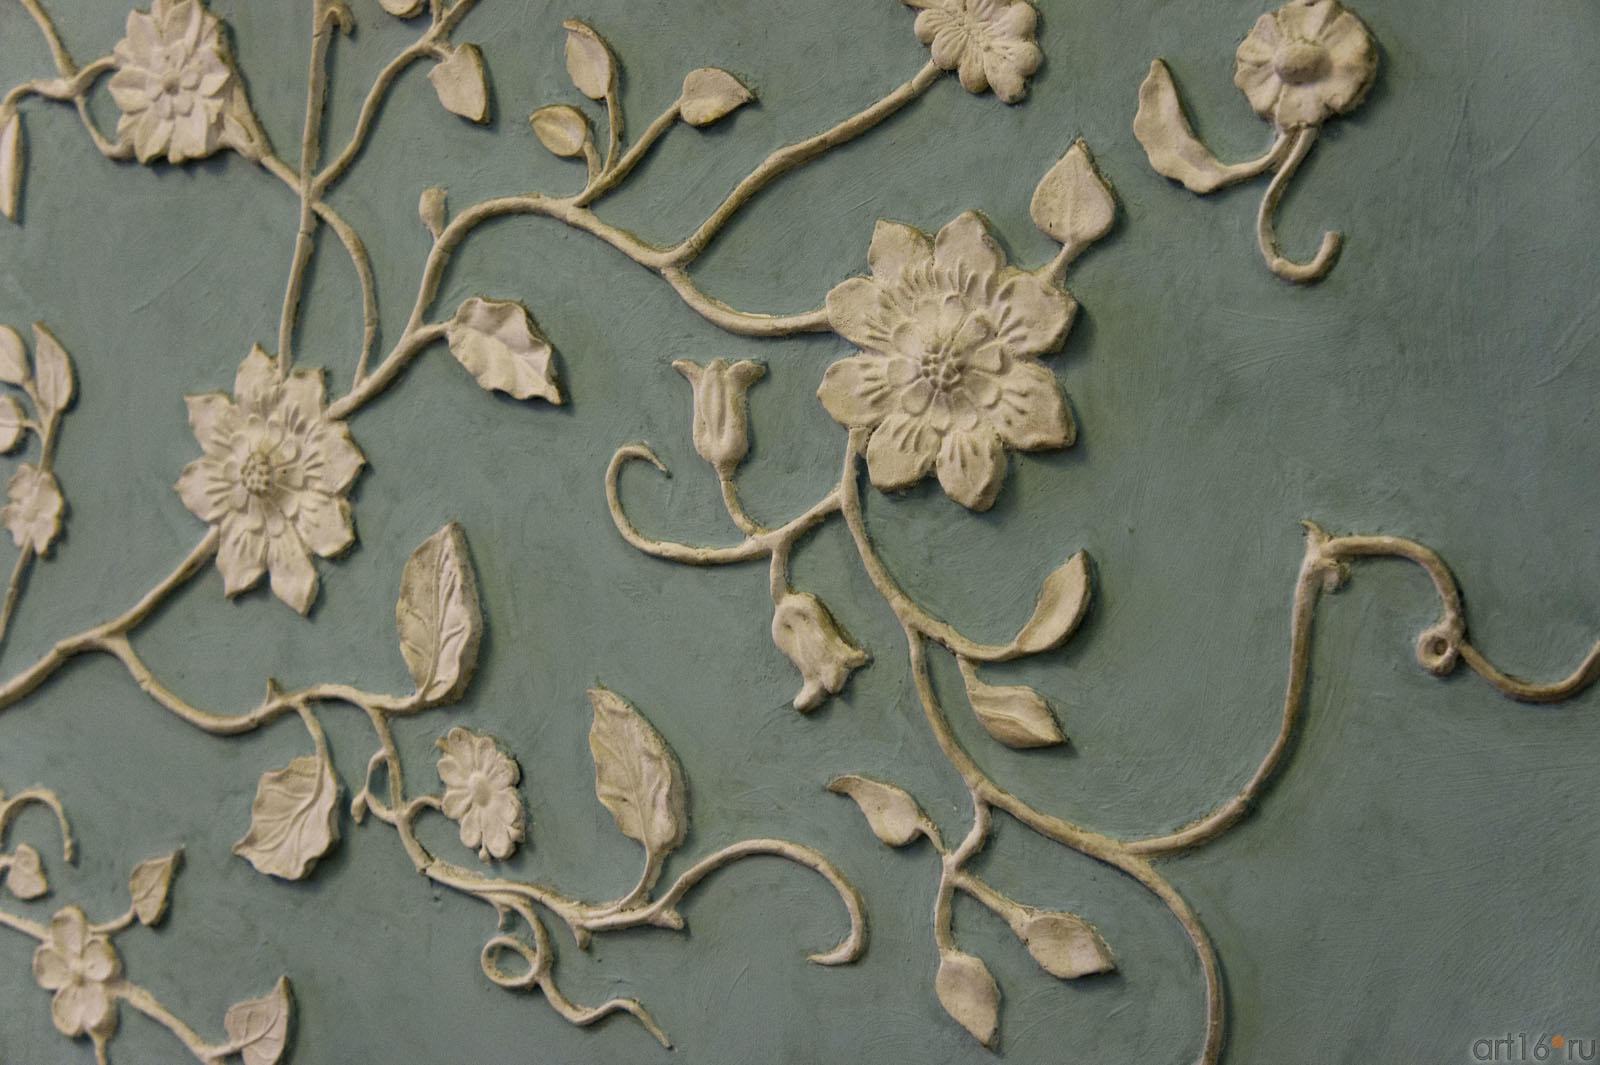  Фрагмент стены (затейливый лепной узор из листьев и цветов)::Алупка, Воронцовский дворец